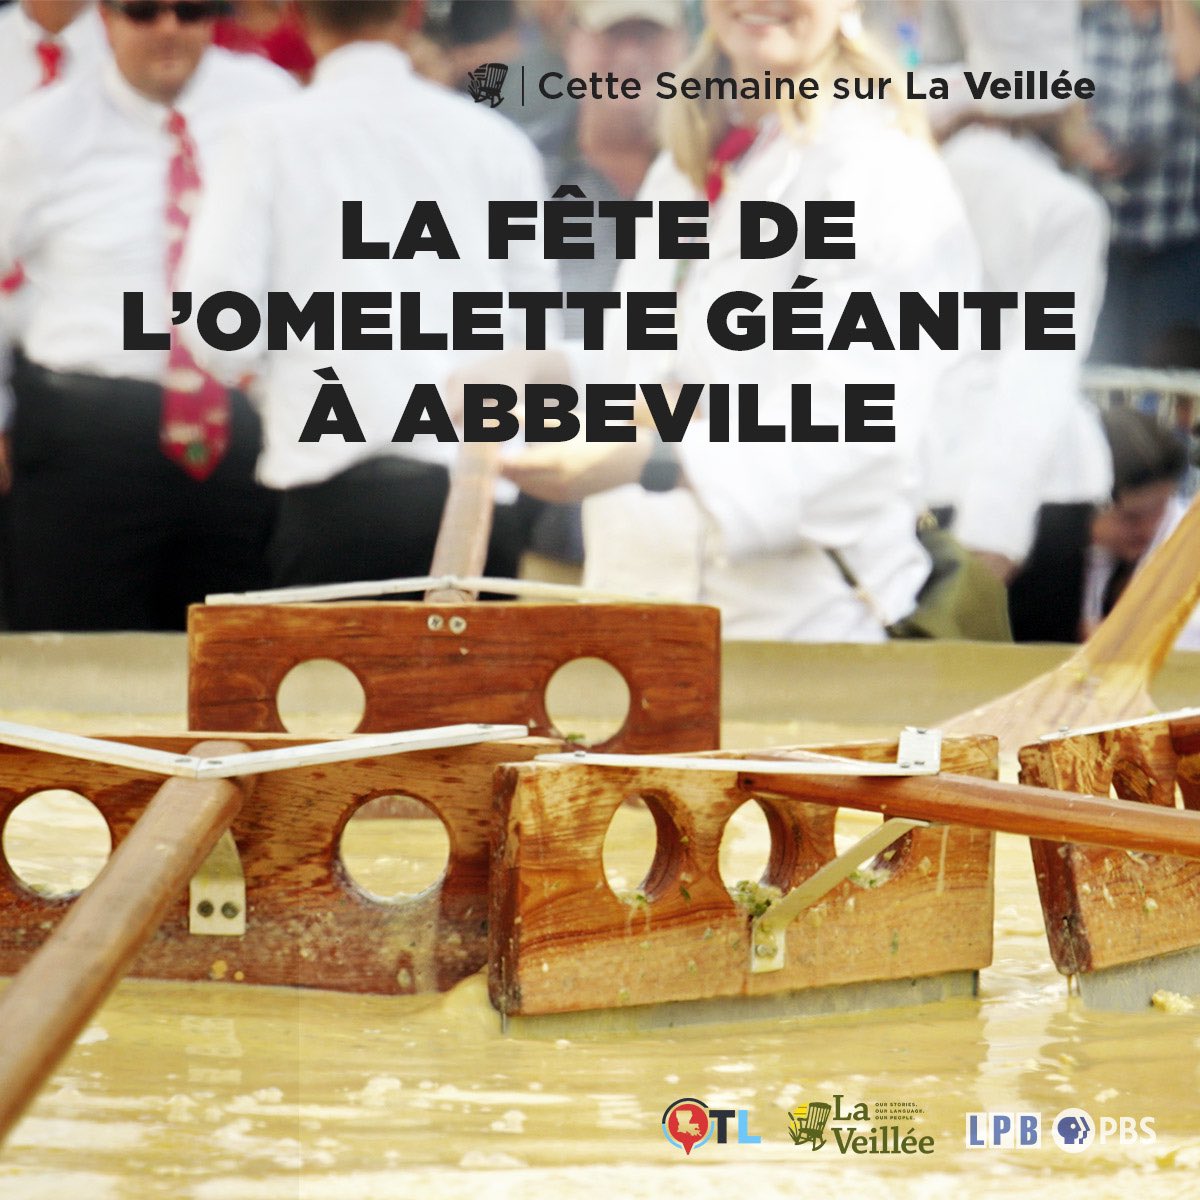 À soir à 7:45 pm sur @lpborg et @telelouisiane.

lpb.org/laveillee

#GiantOmelette #Abbeville #VermilionParish #OnlyLouisiana #ExploreLouisiana